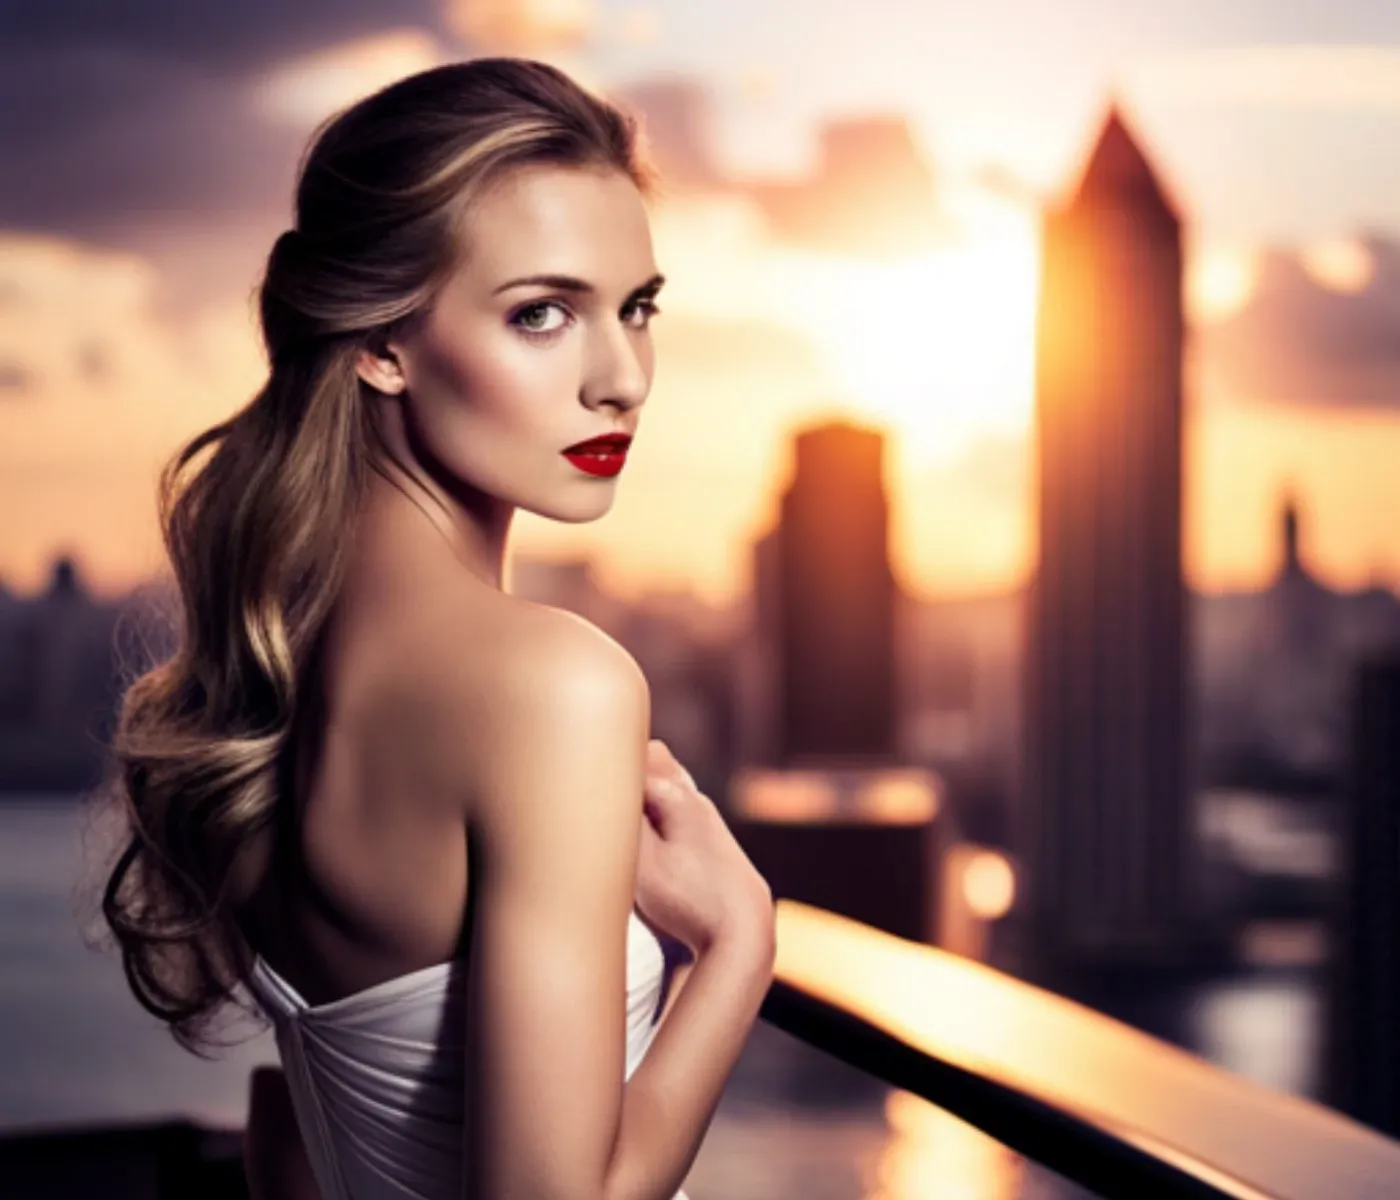 Eine schöne junge Frau steht in engem weißen Kleid auf einer Terrasse und schaut in die Kamera. Im Hintergrund die Skyline einer Stadt.